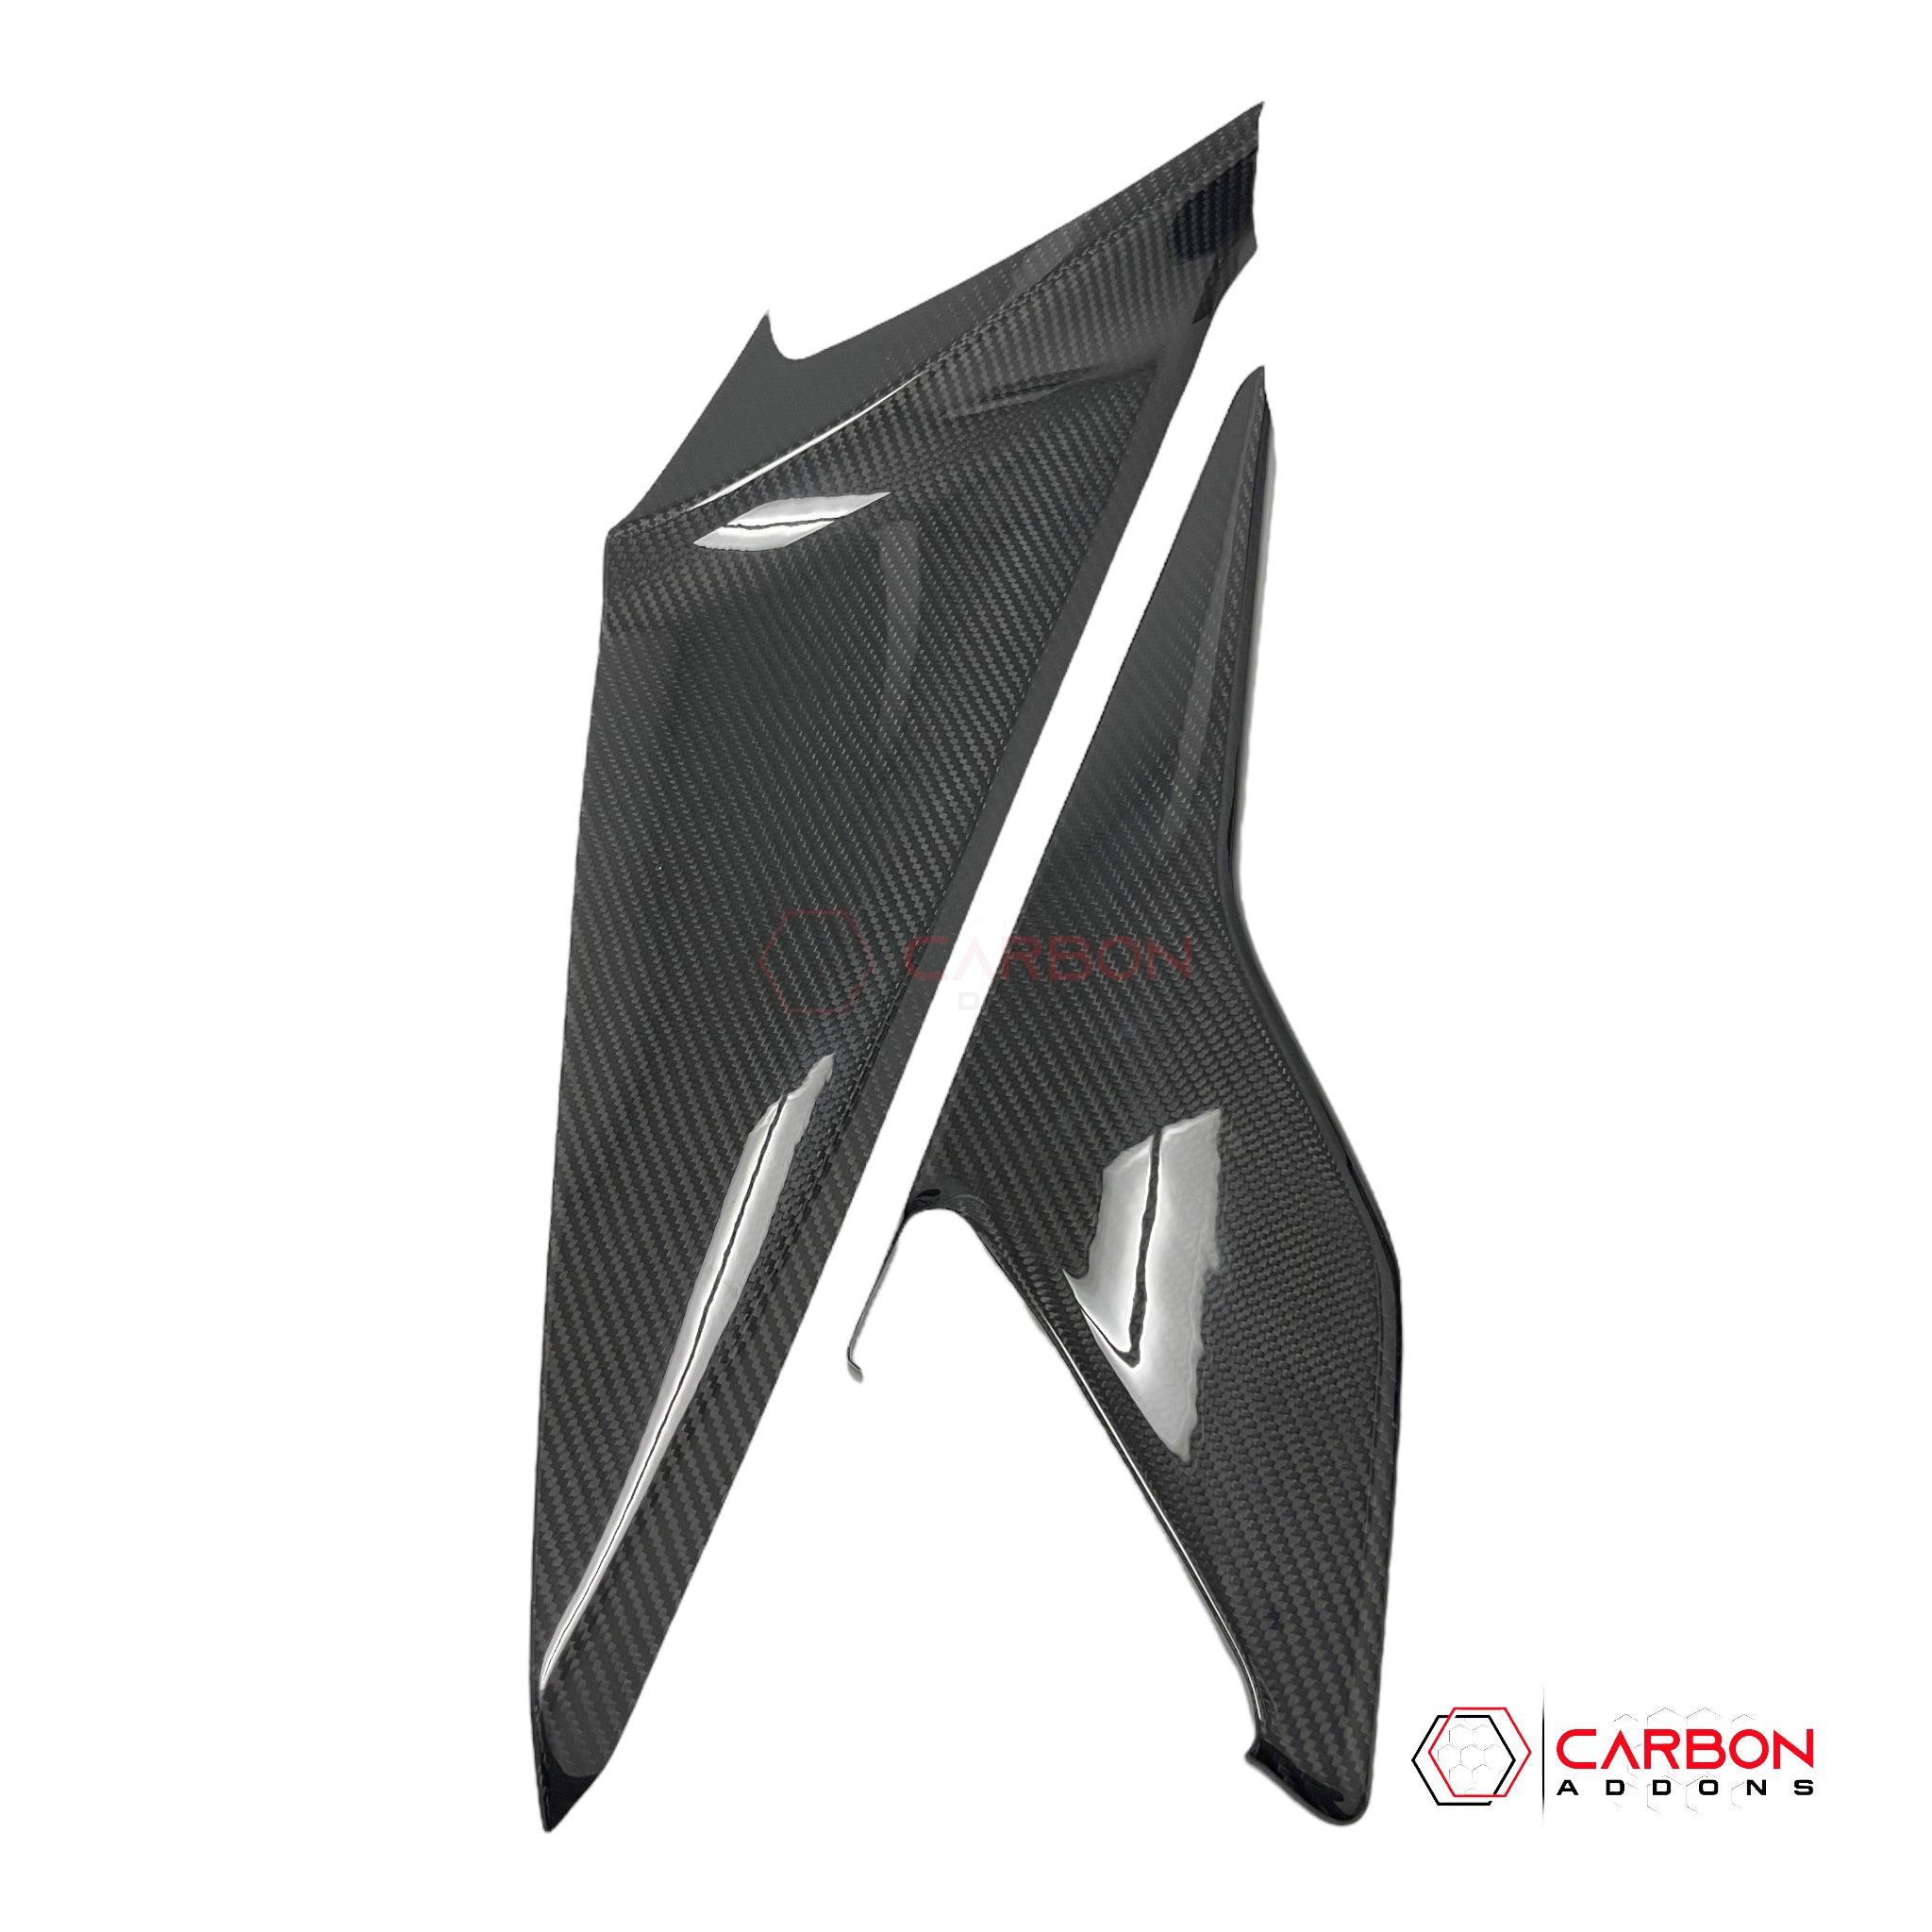 C8 Corvette Carbon Fiber Center Console Side Trim Covers - carbonaddons Carbon Fiber Parts, Accessories, Upgrades, Mods